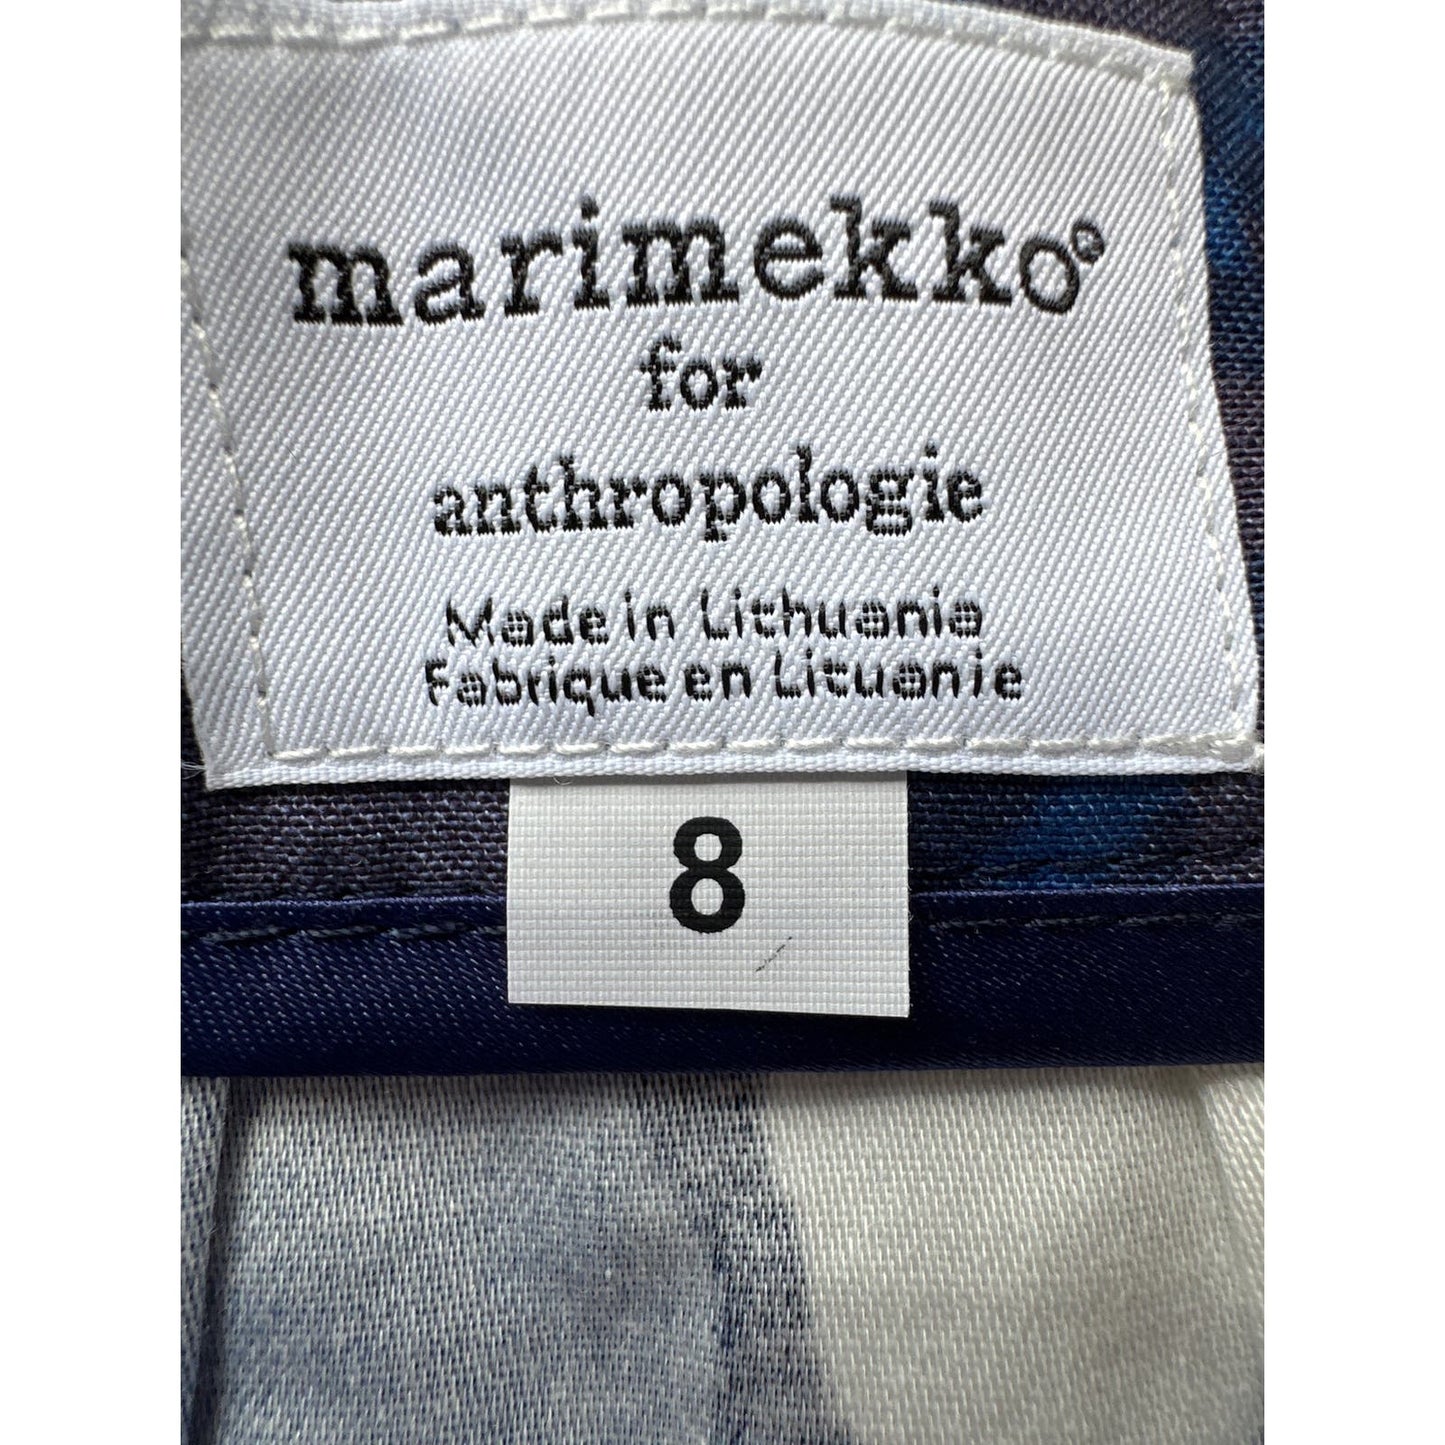 Marimekko for Anthropologie Blue Floral Midi Skirt Sz 8